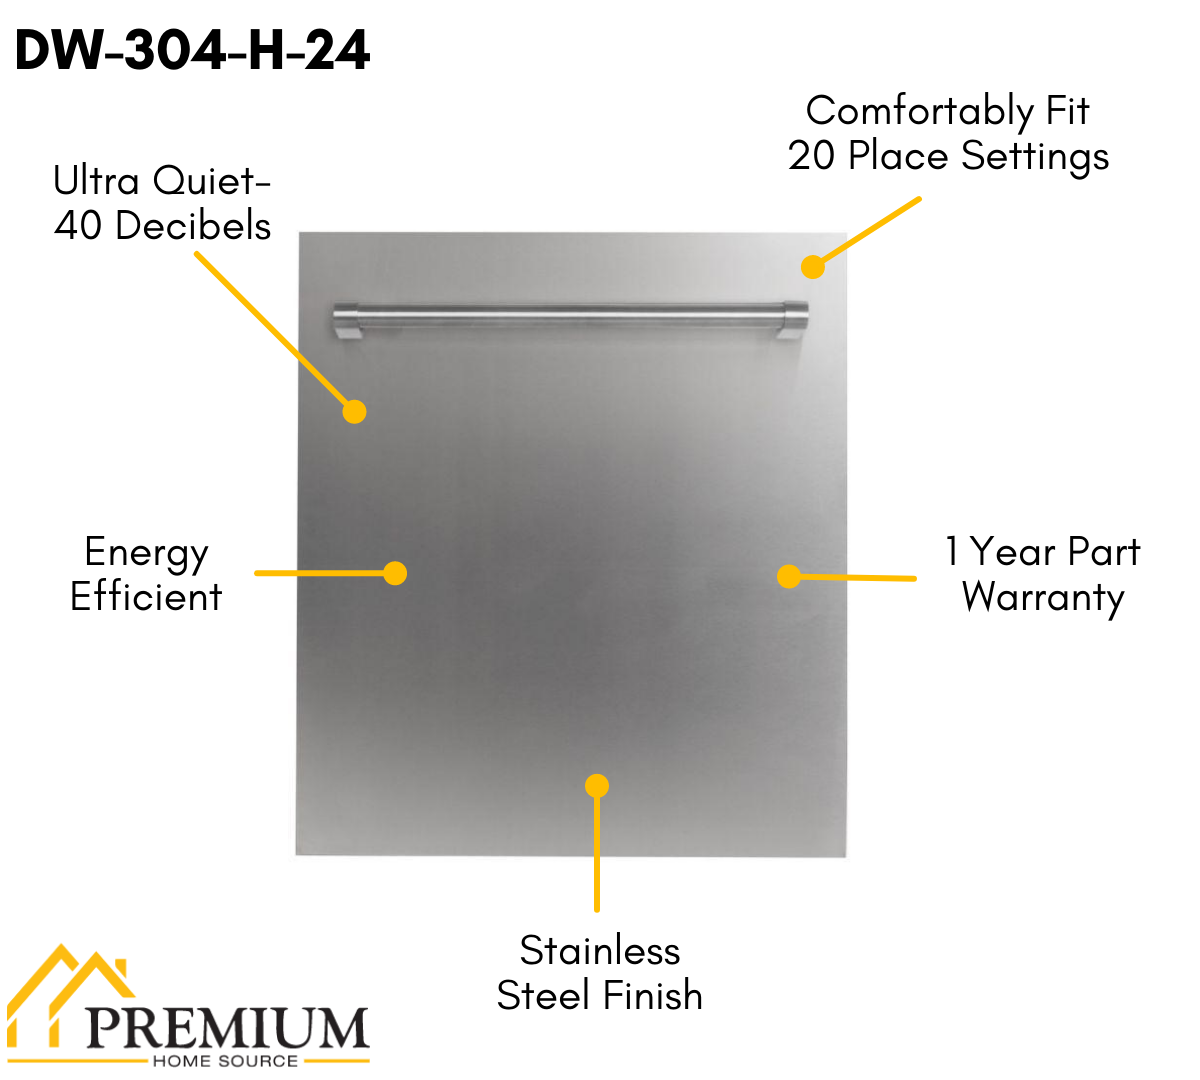 ZLINE Appliance Package - 30 in. Gas Range, Range Hood, Dishwasher, 3KP-RGRH30-DW